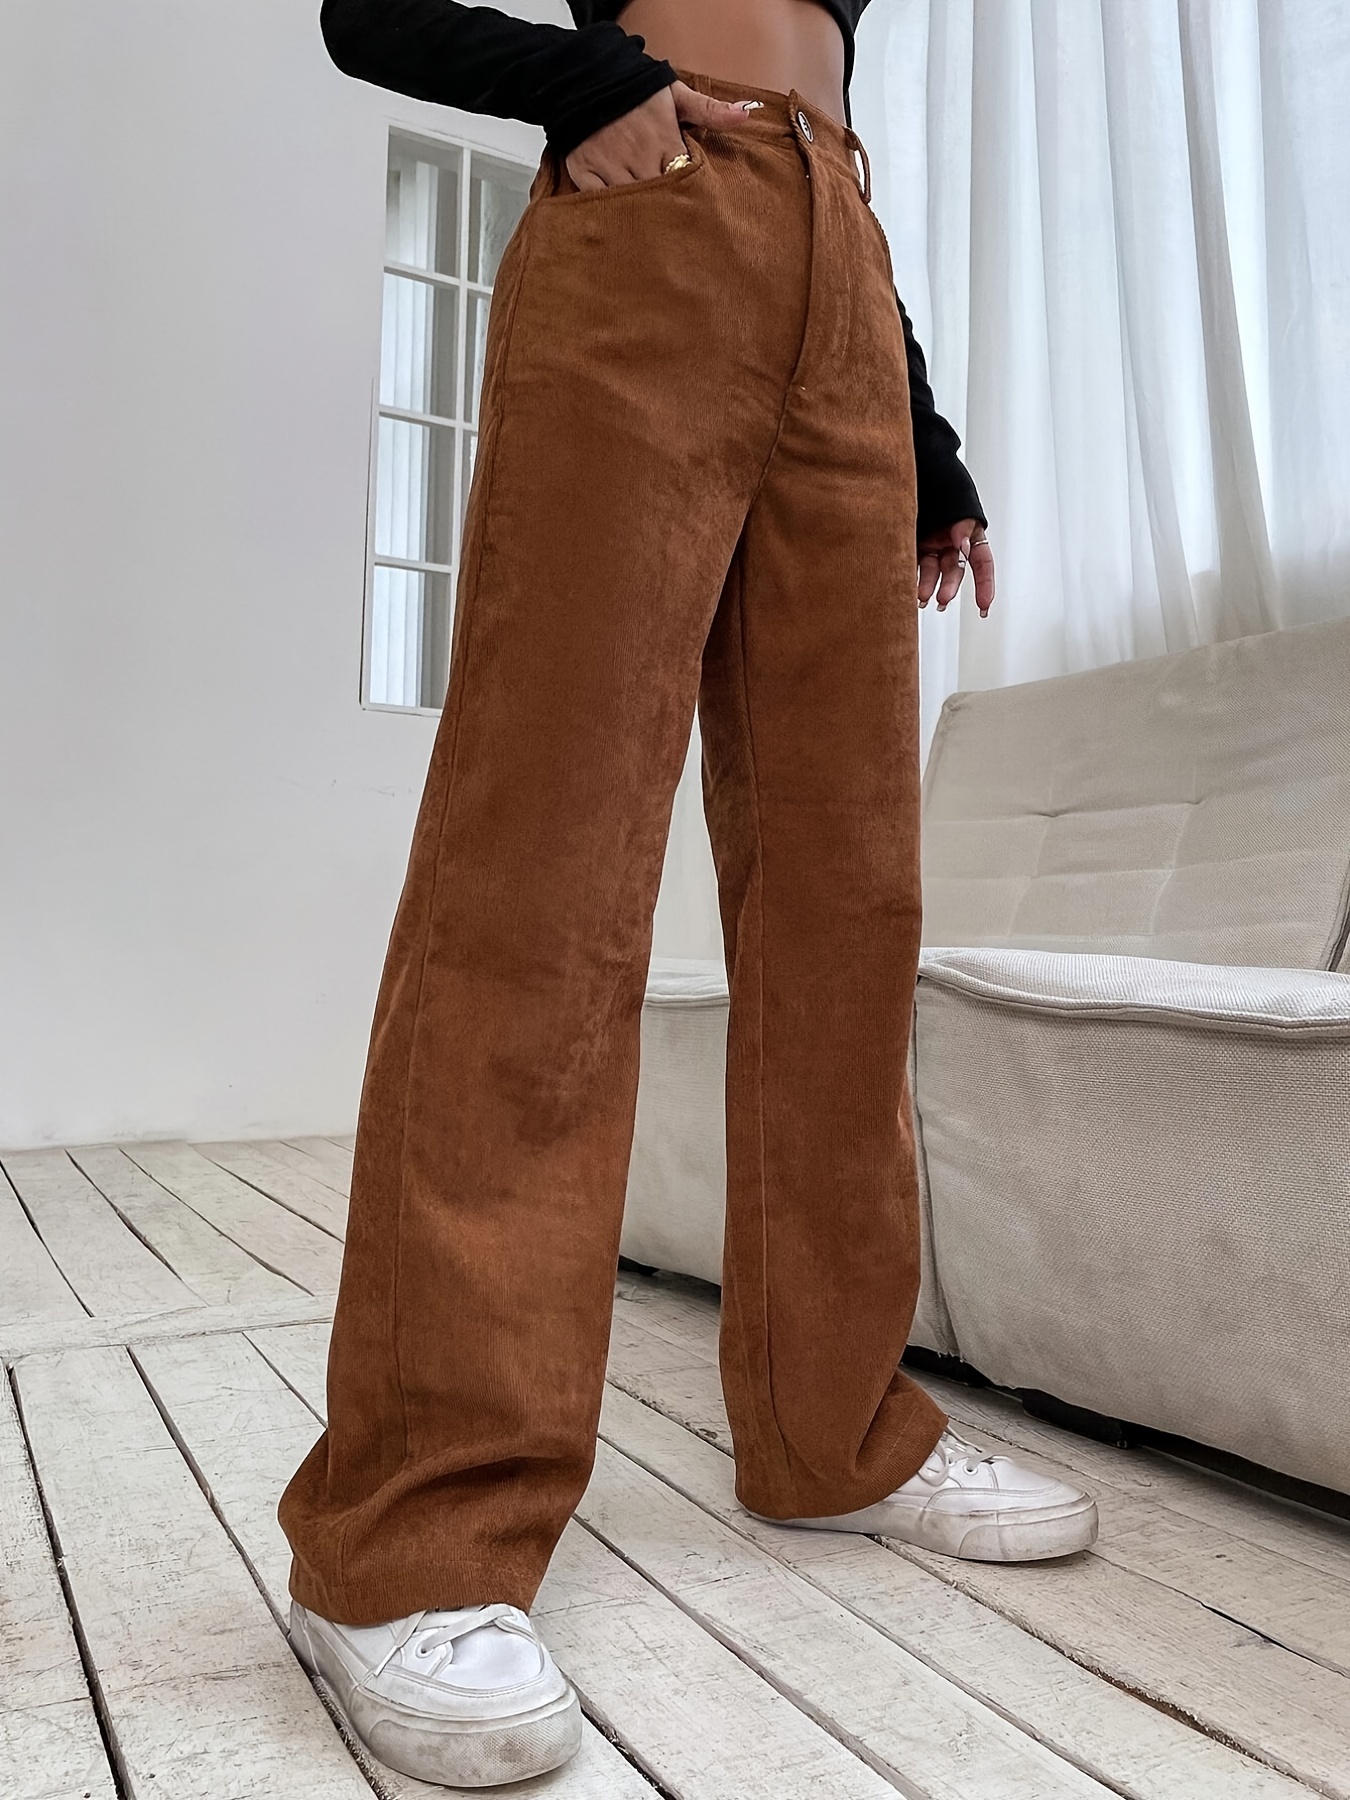 Corduroy Trousers for Women - Women Corduroy Pants Fashion High Waist Solid  Long Pantalon Slim Straight Trousers Strreetwear Pants Causal Woman  Bottoms,As Shown,S : : Fashion